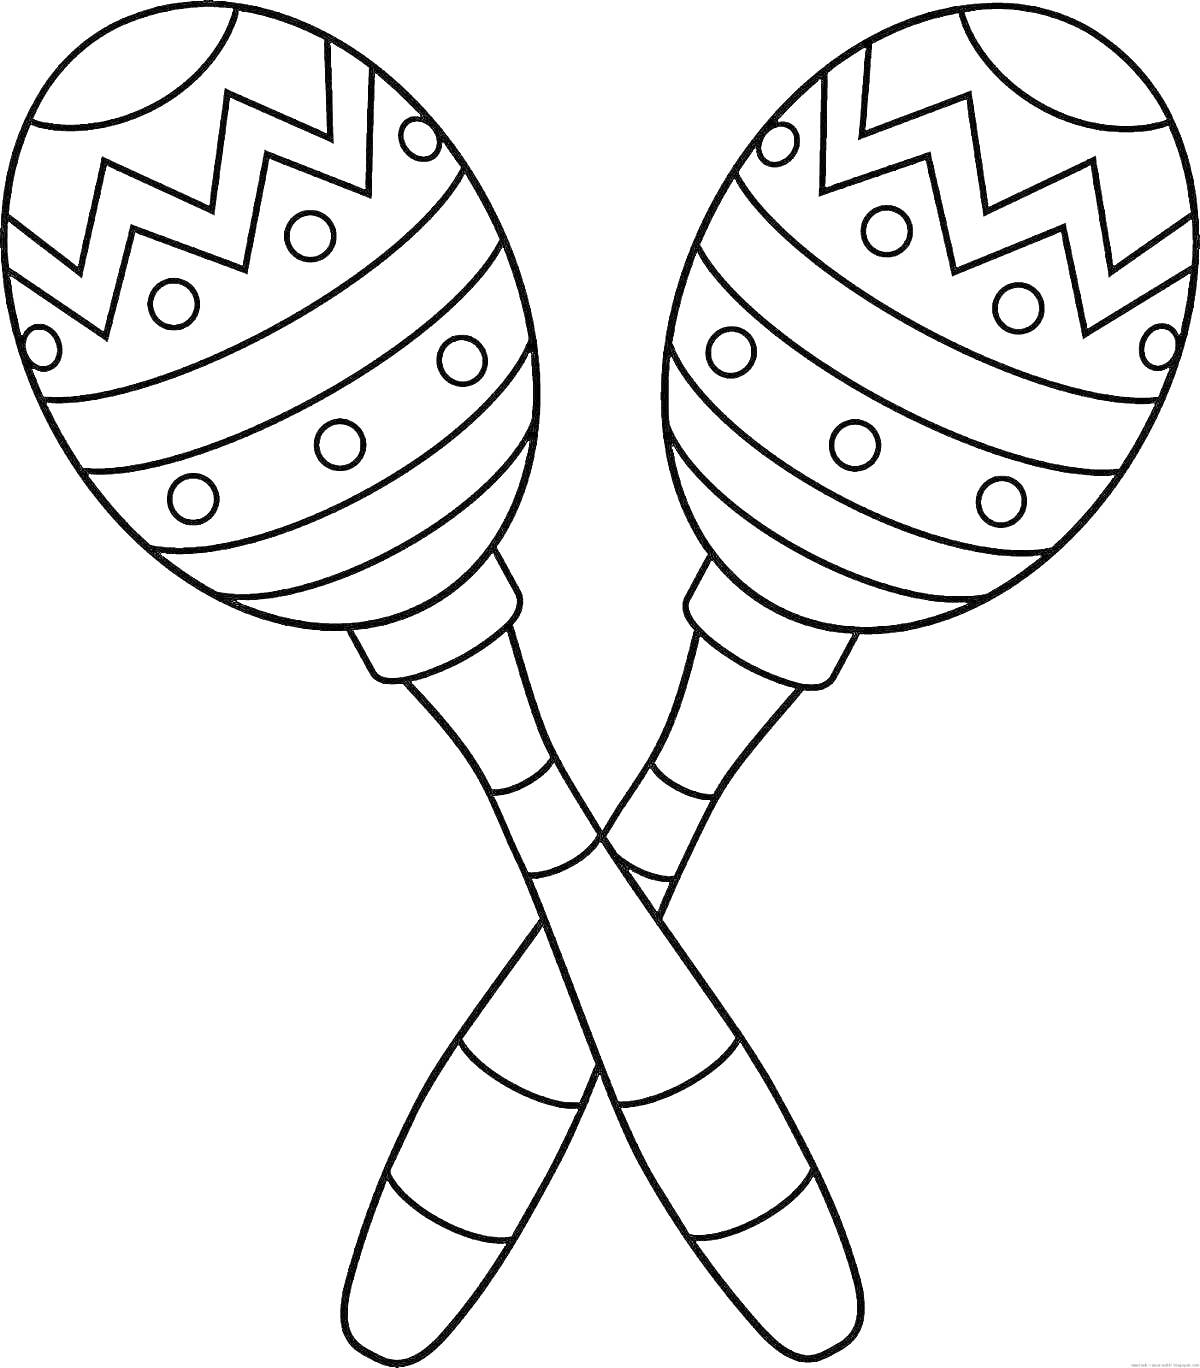 Раскраска Две раскрашенные ложки-маракасы с узорами (зигзаги и точки)